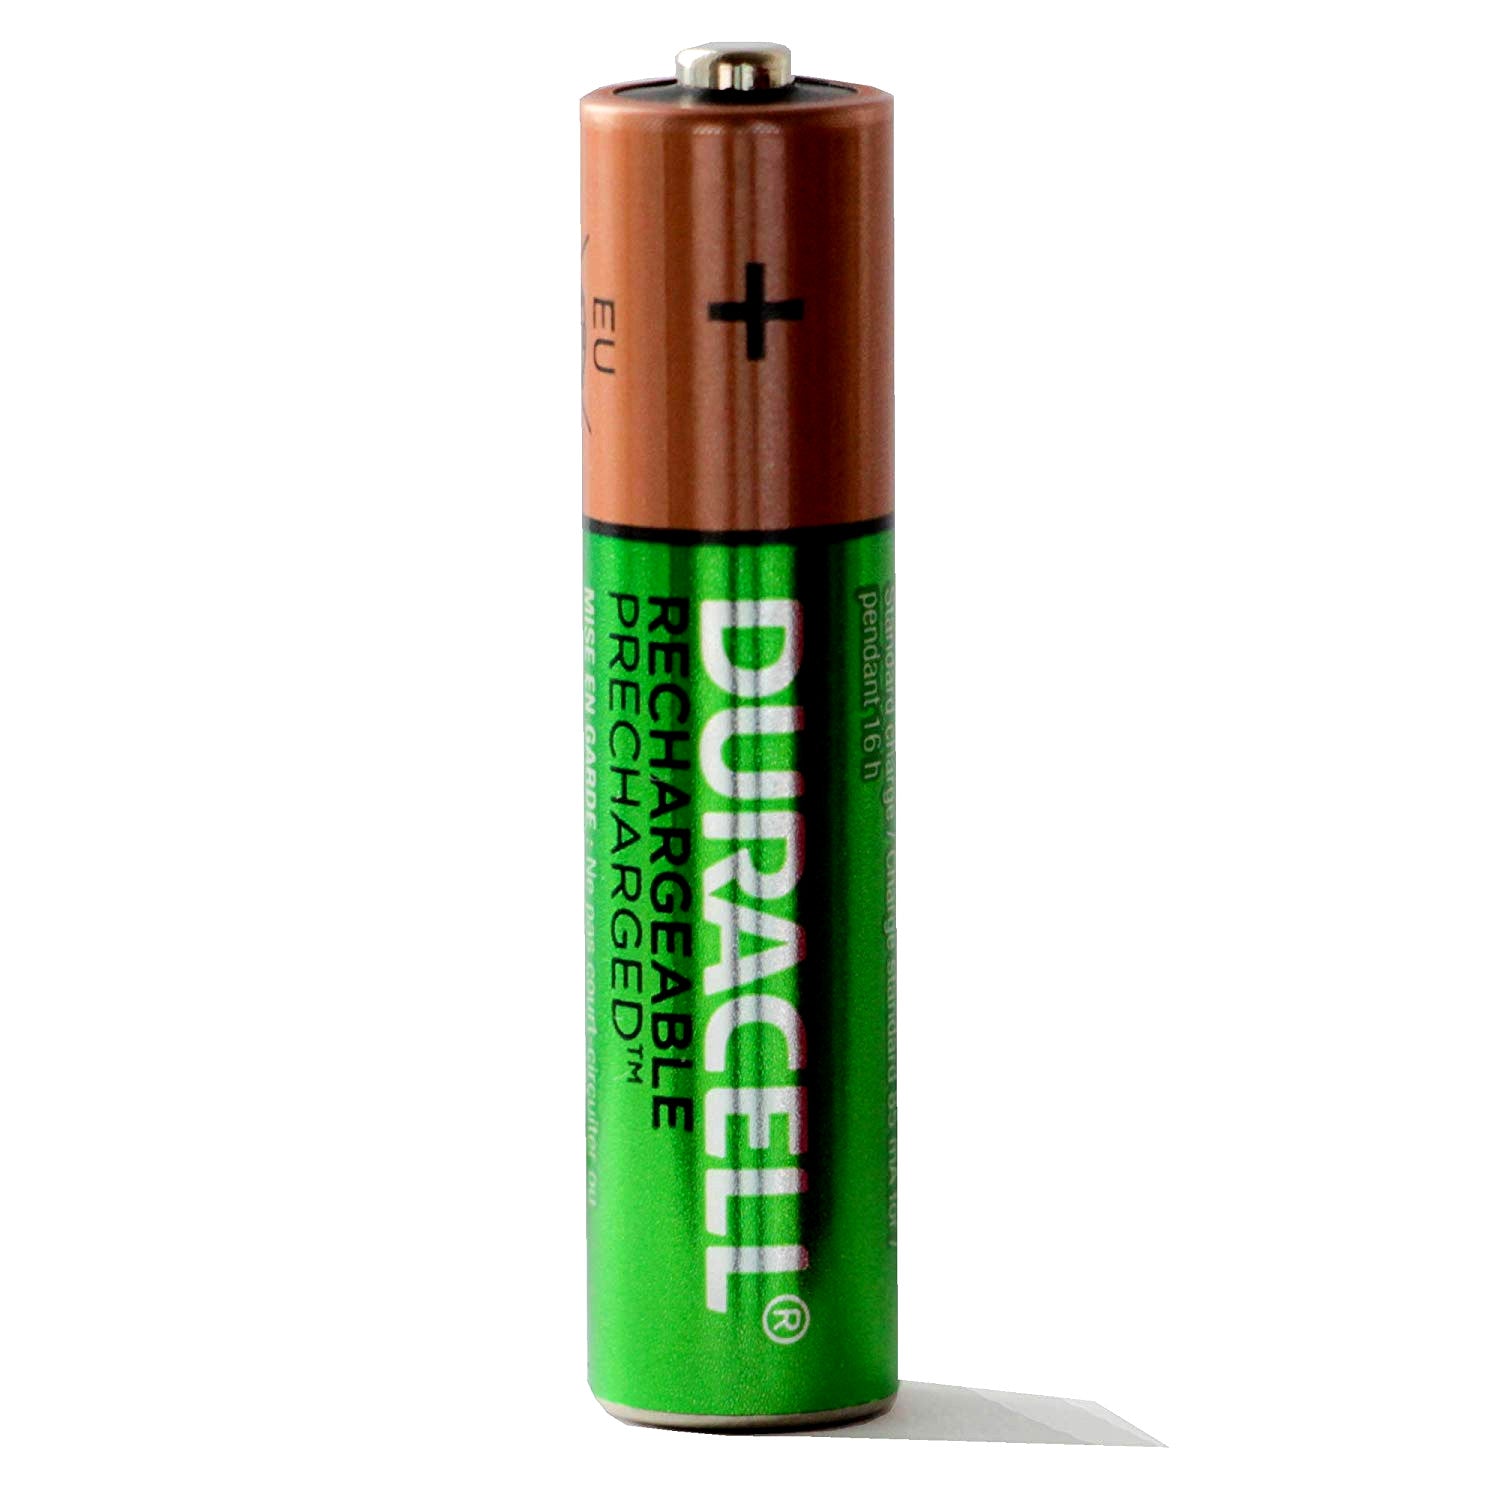 Baterías Recargables de Larga Duración Duracell AAA 900mAh - BIOWEB®  Colombia